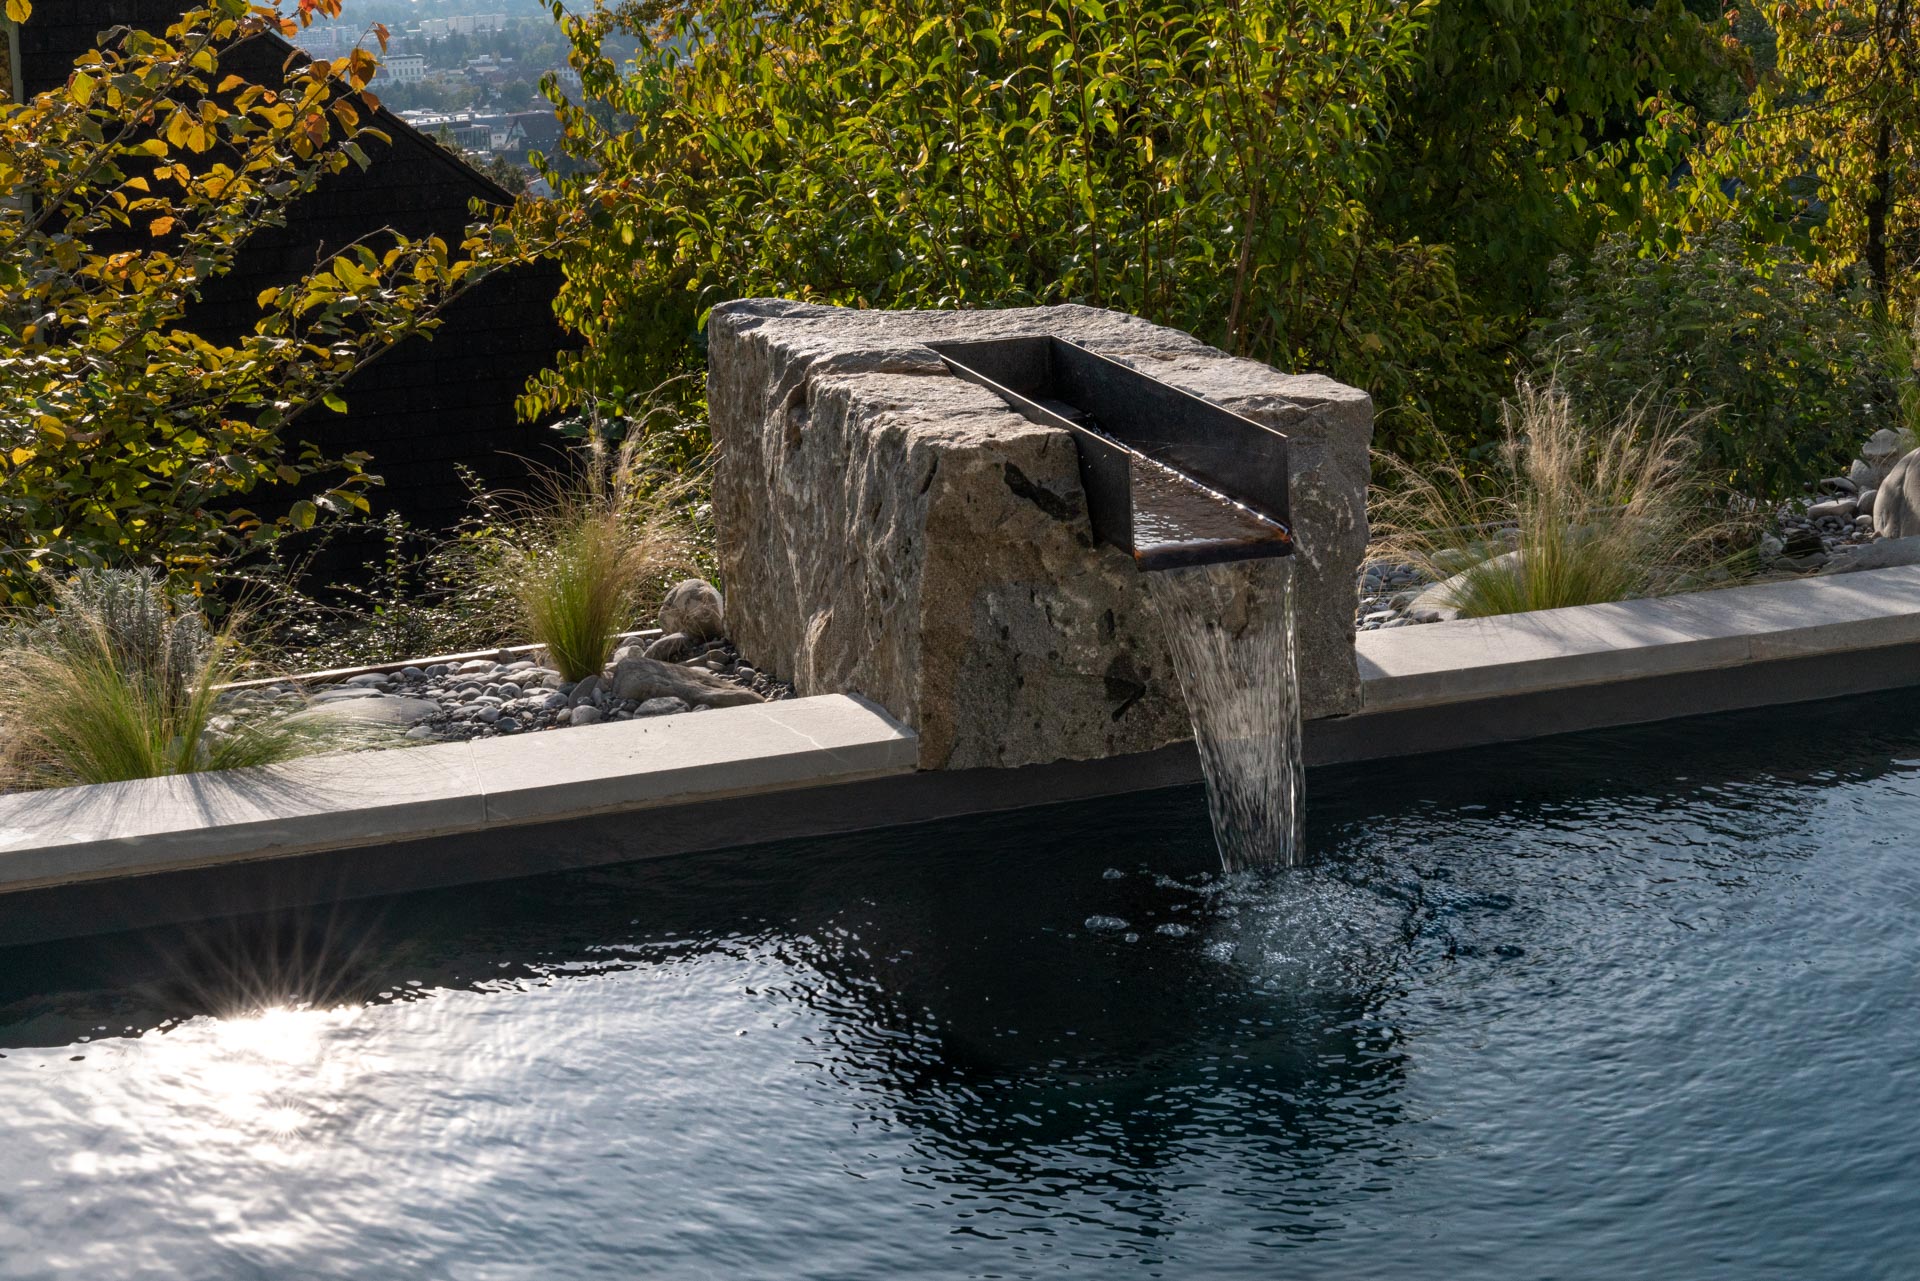 Wasser im Garten: Natürlicher Swimmingpool, der dem Garten eine beruhigende Atmosphäre verleiht.